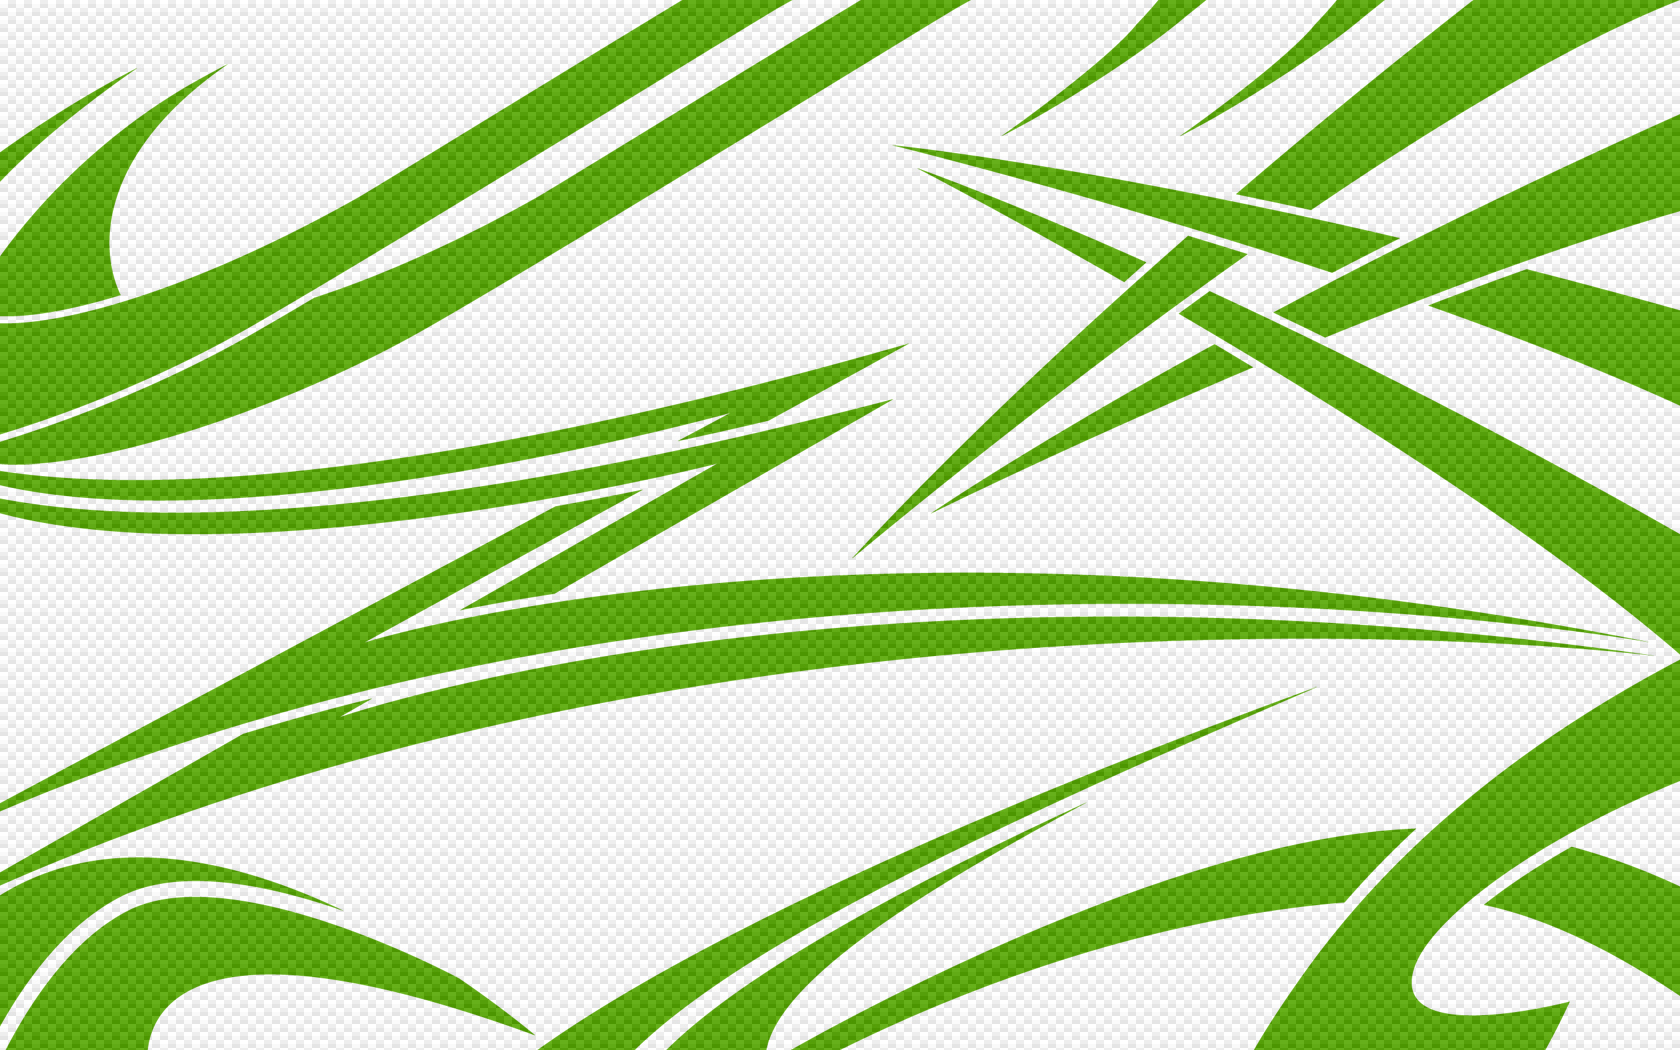 grün weiße tapete,grün,blatt,muster,linie,pflanze